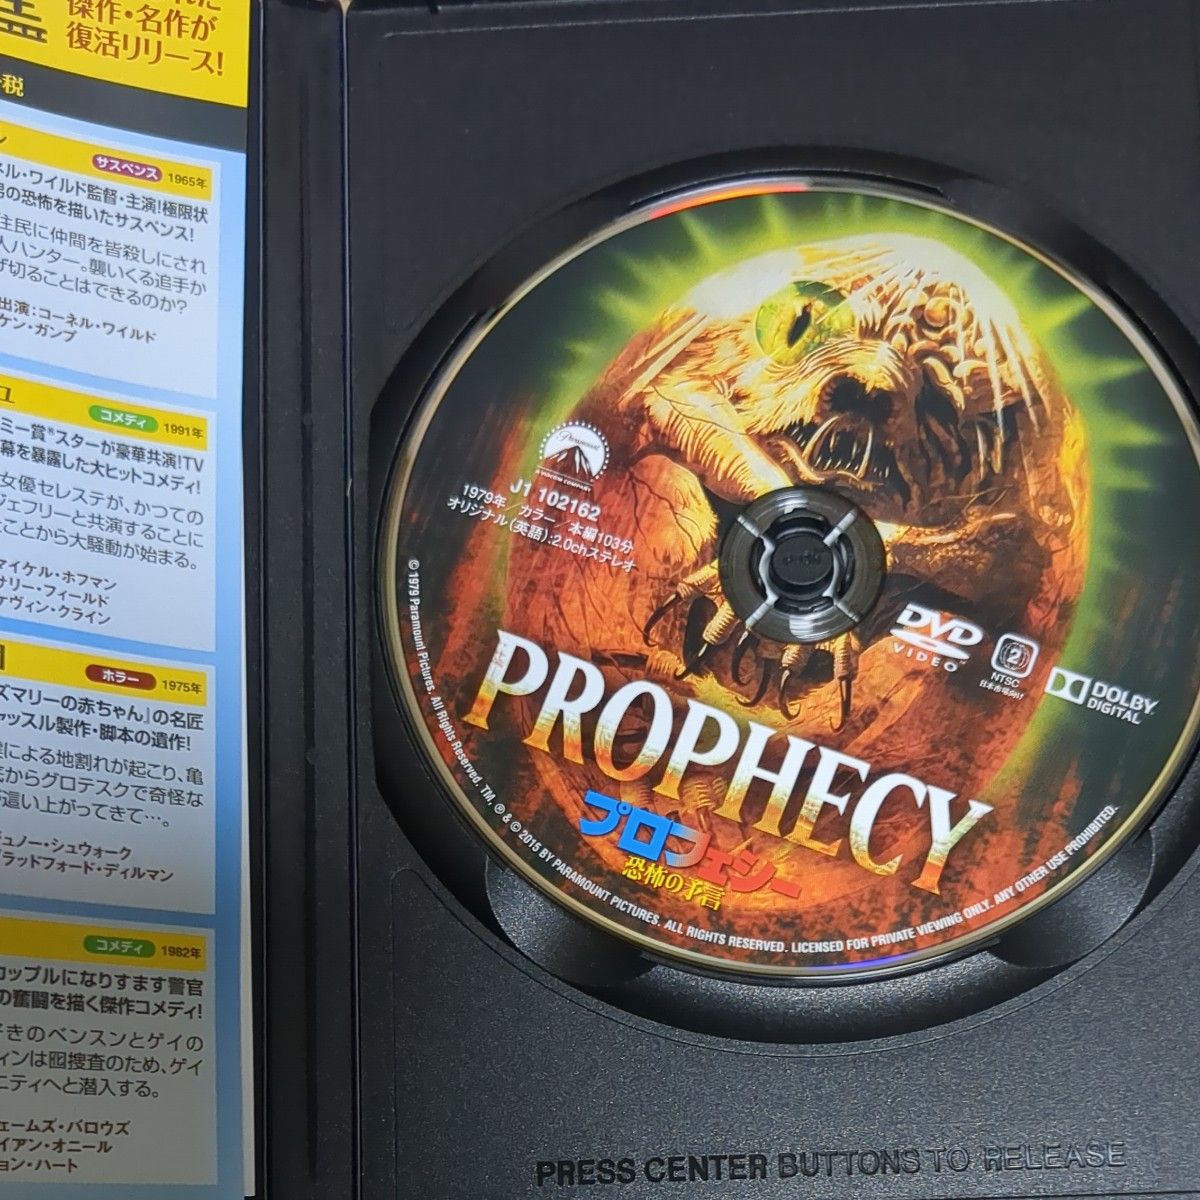 プロフェシー/恐怖の予言 タリア・シャイア  映画DVD